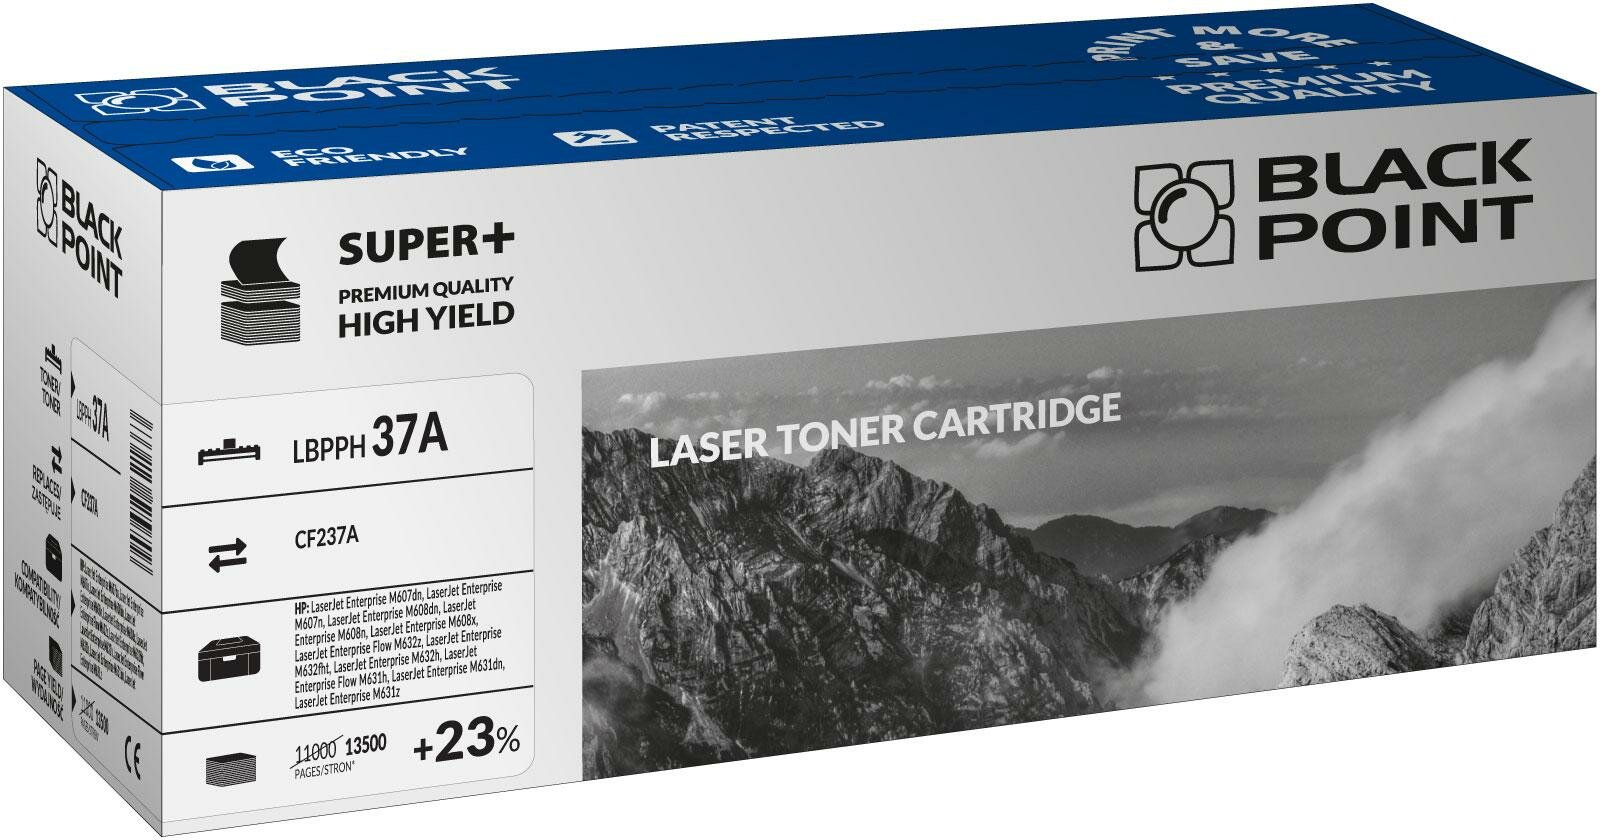 Toner laserowy Black Point Super Plus LBPPH37A widok pod kątem na opakowanie